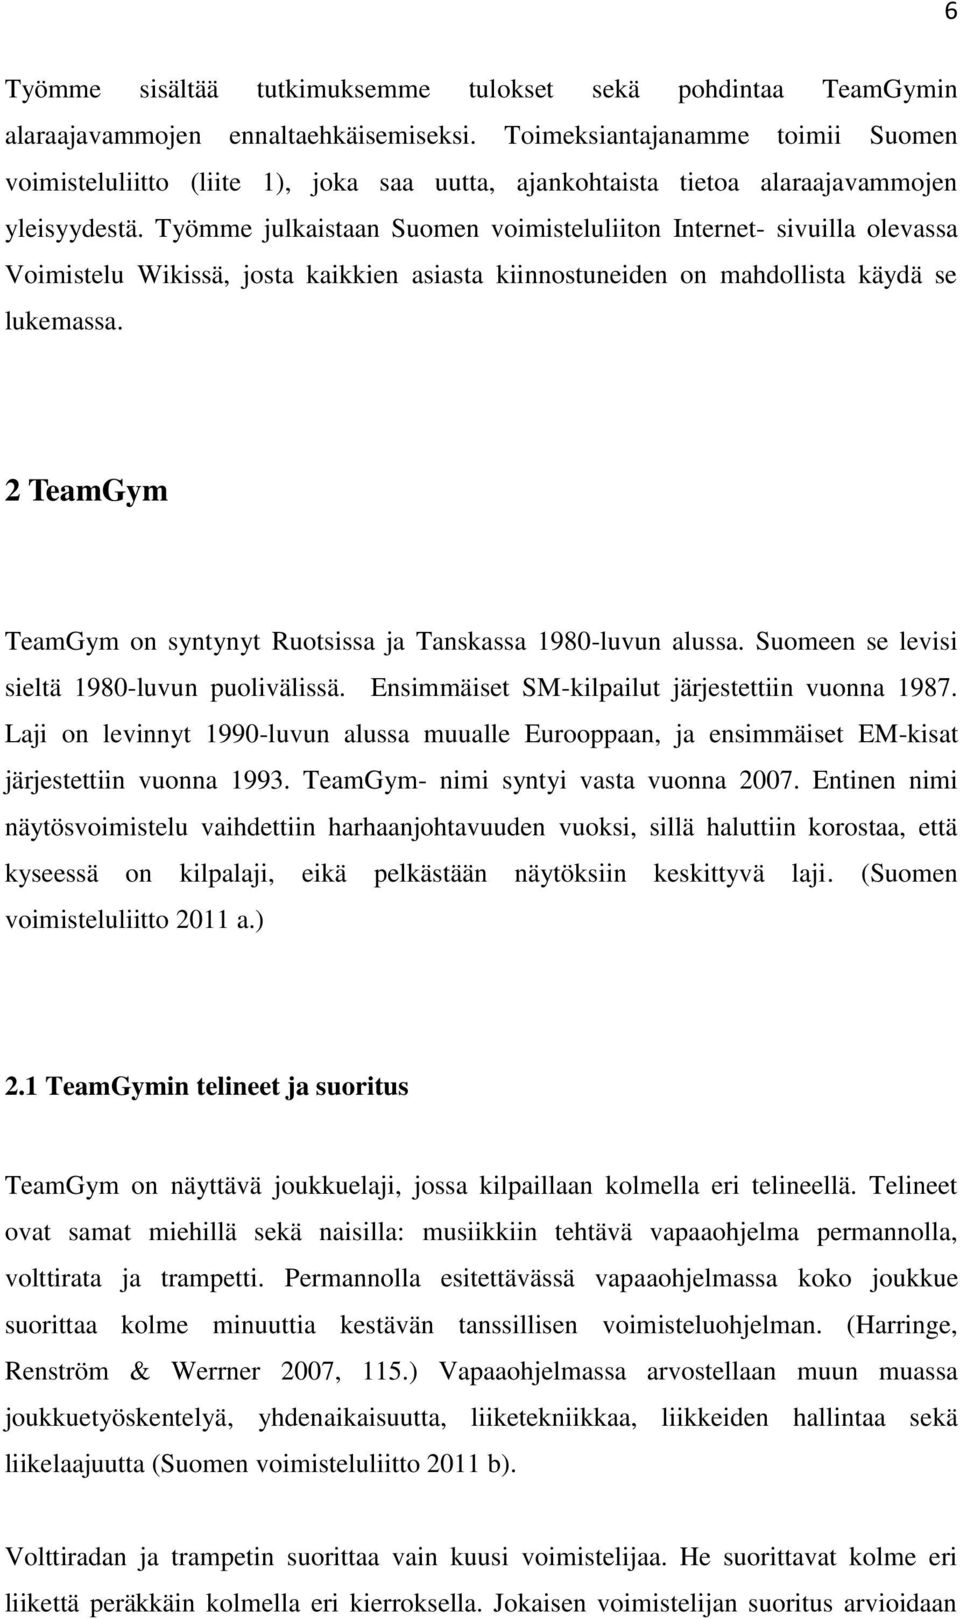 Työmme julkaistaan Suomen voimisteluliiton Internet- sivuilla olevassa Voimistelu Wikissä, josta kaikkien asiasta kiinnostuneiden on mahdollista käydä se lukemassa.